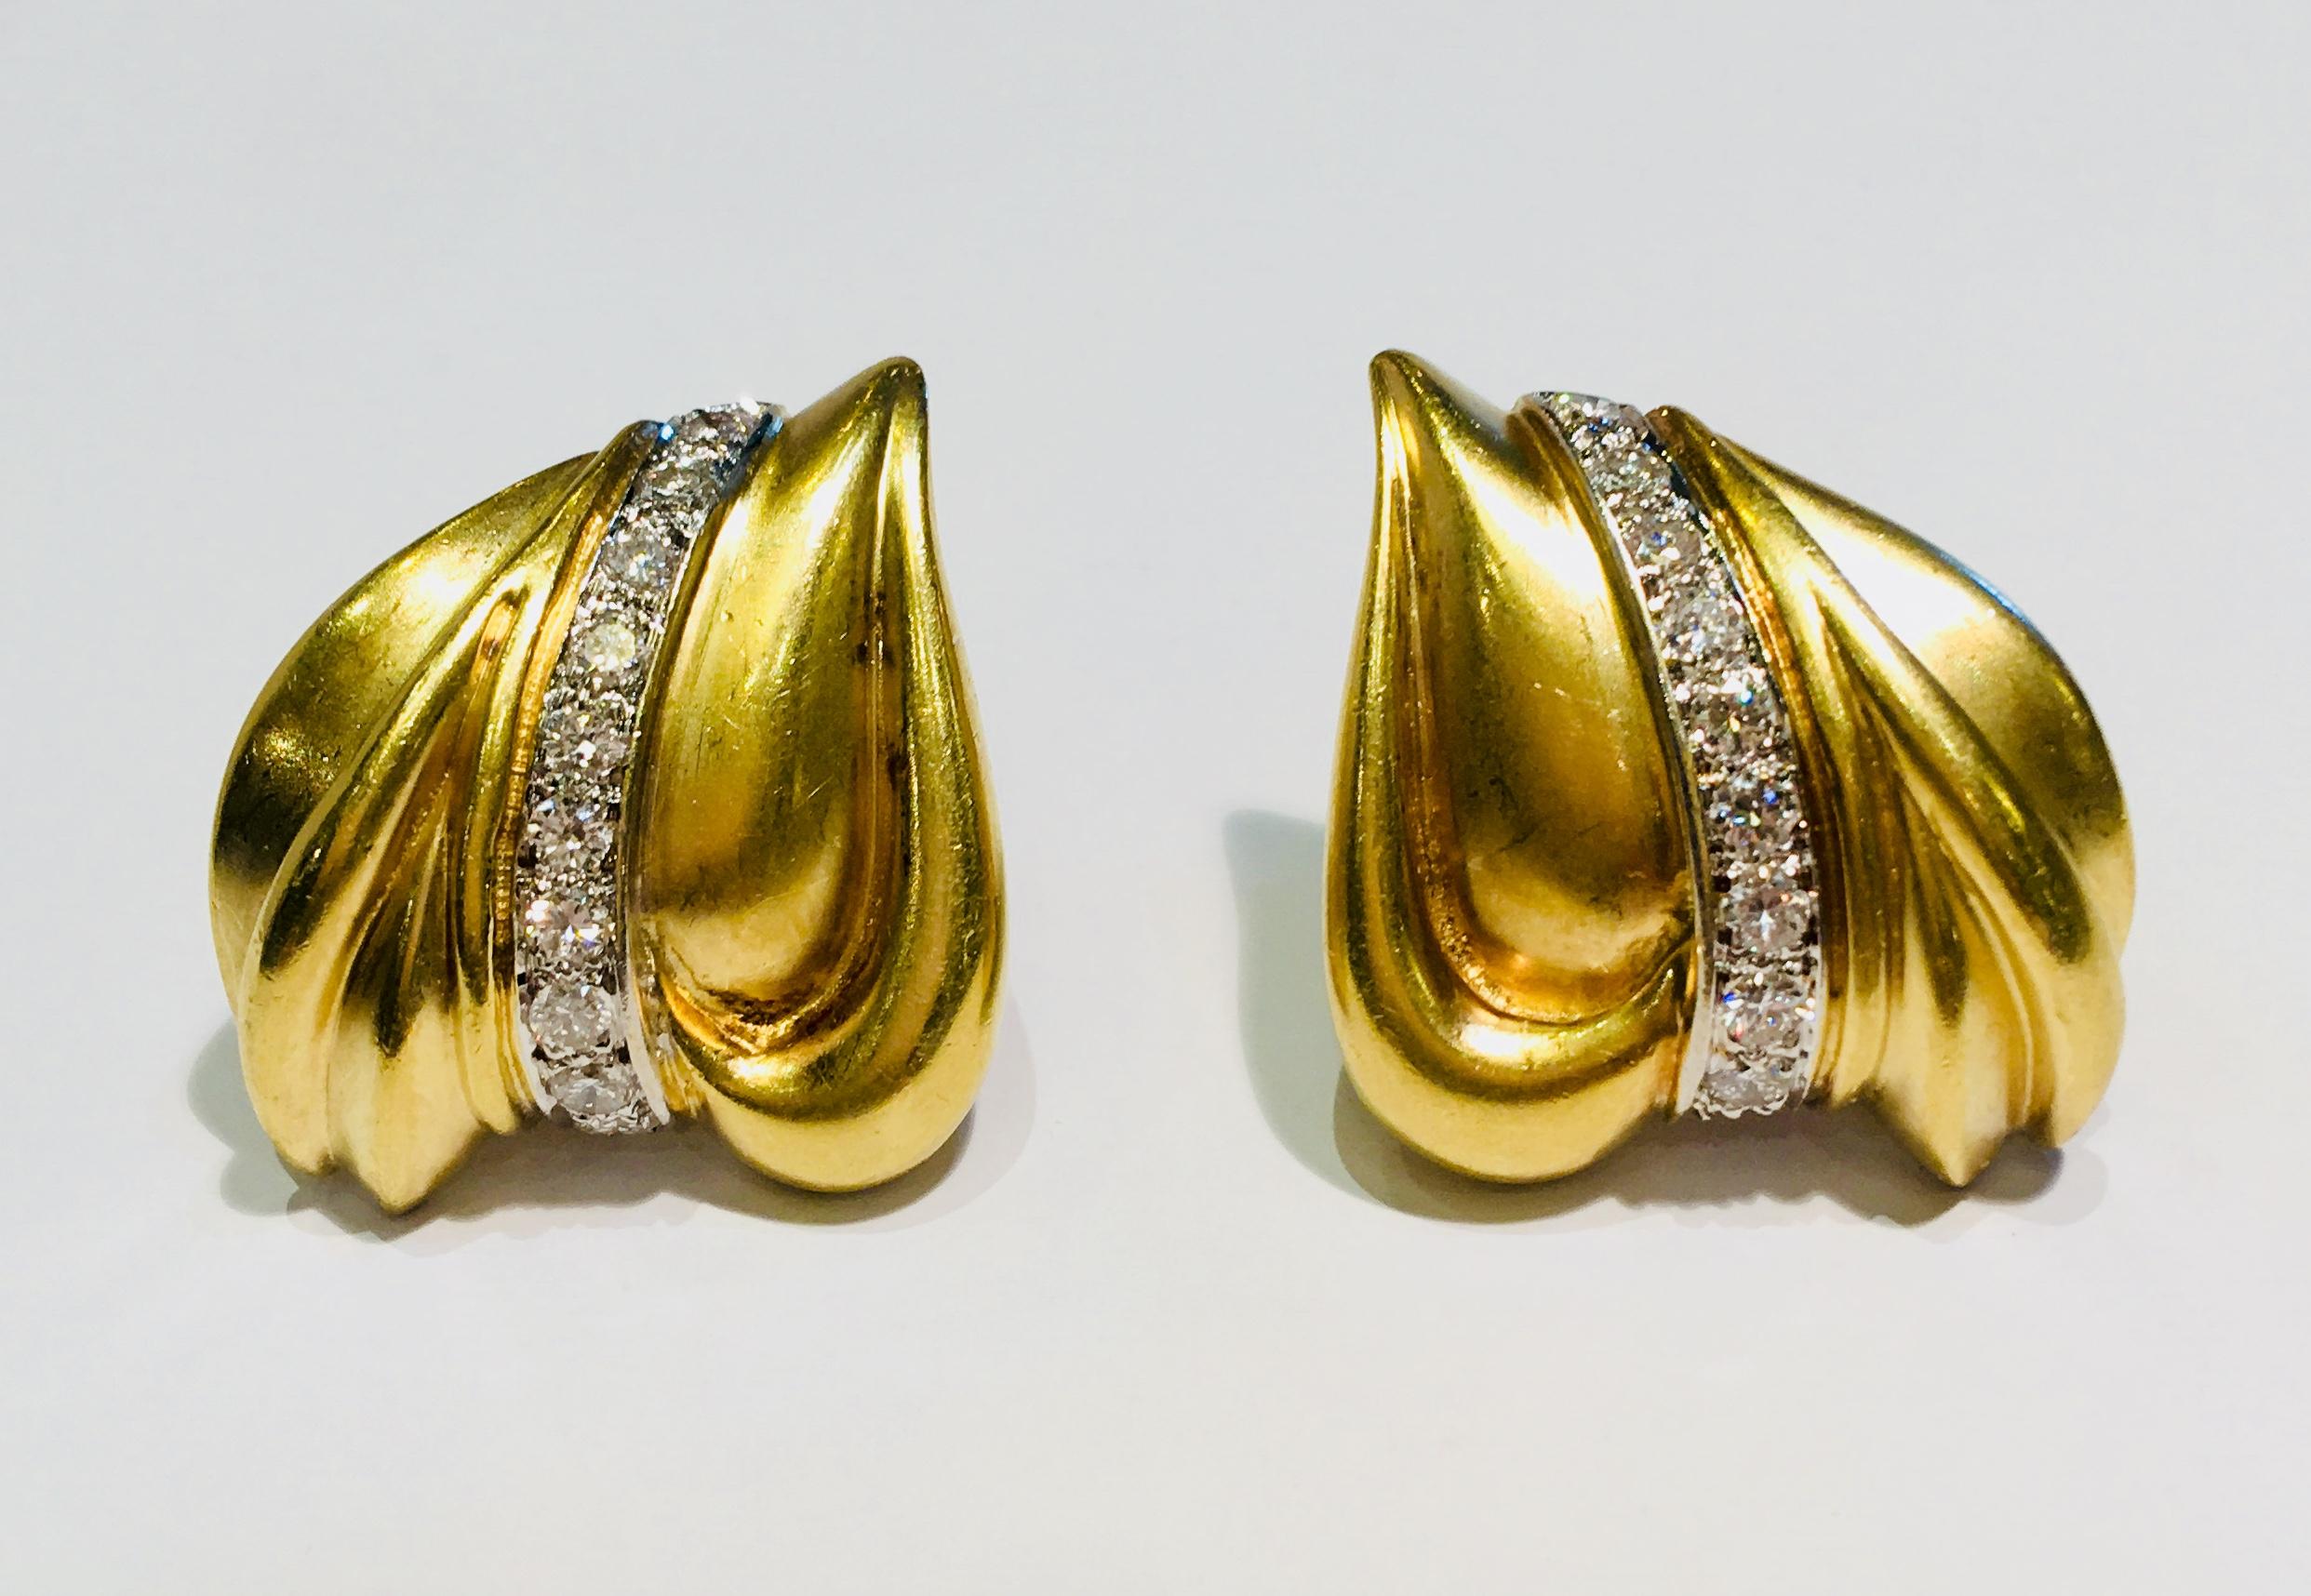 Die eleganten Ohrringe aus 18-karätigem Gelbgold sind satiniert und haben eine abstrakte, dreidimensionale Herzform mit einer geschwungenen vertikalen Linie aus 10 runden, pflastergefassten Brillanten. 

20 runde Brillanten mit einem Durchmesser von